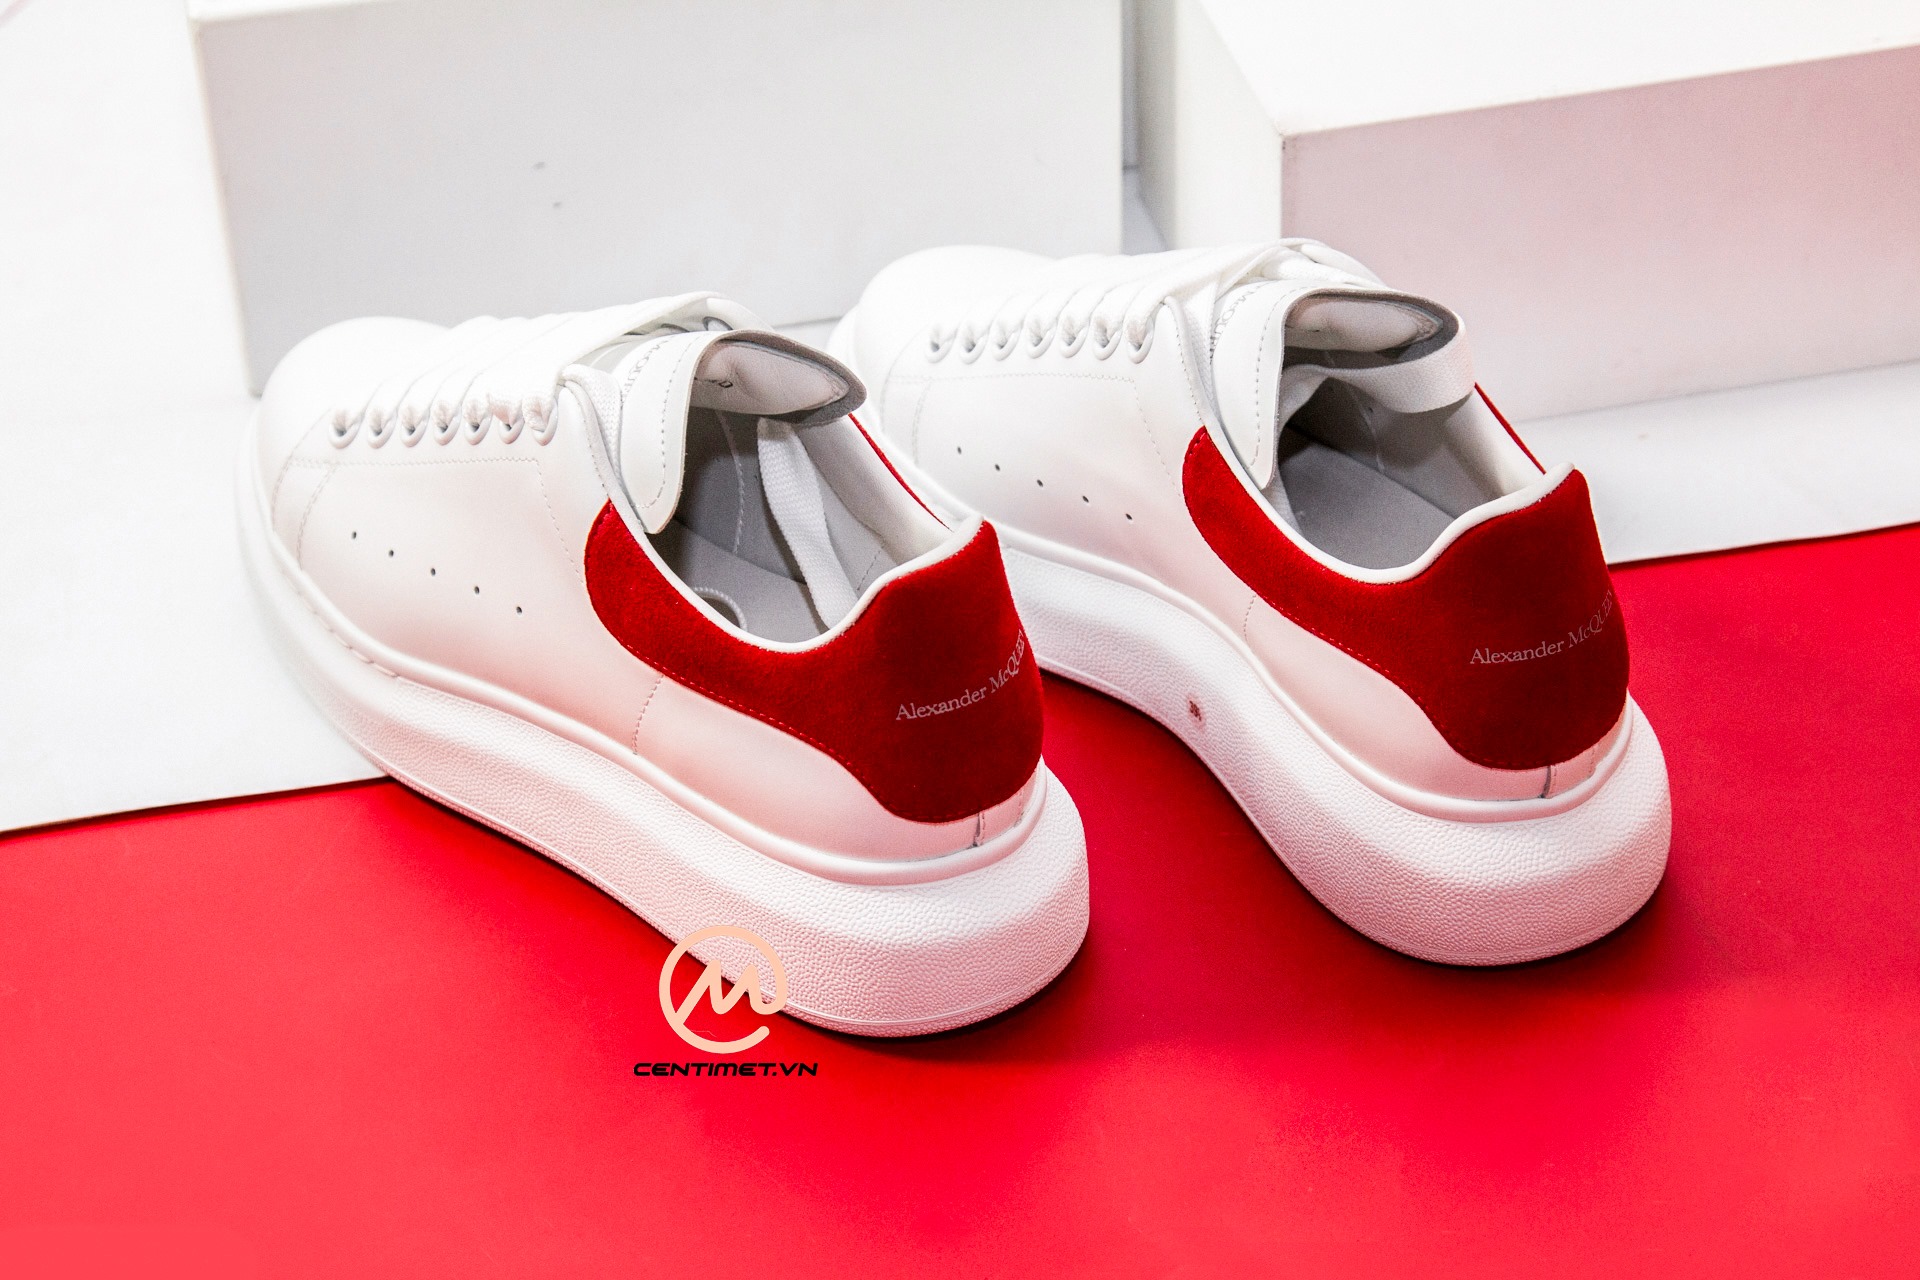 Giày Alexander McQueen Red Suede Oversized Sneaker - Centimet.vn